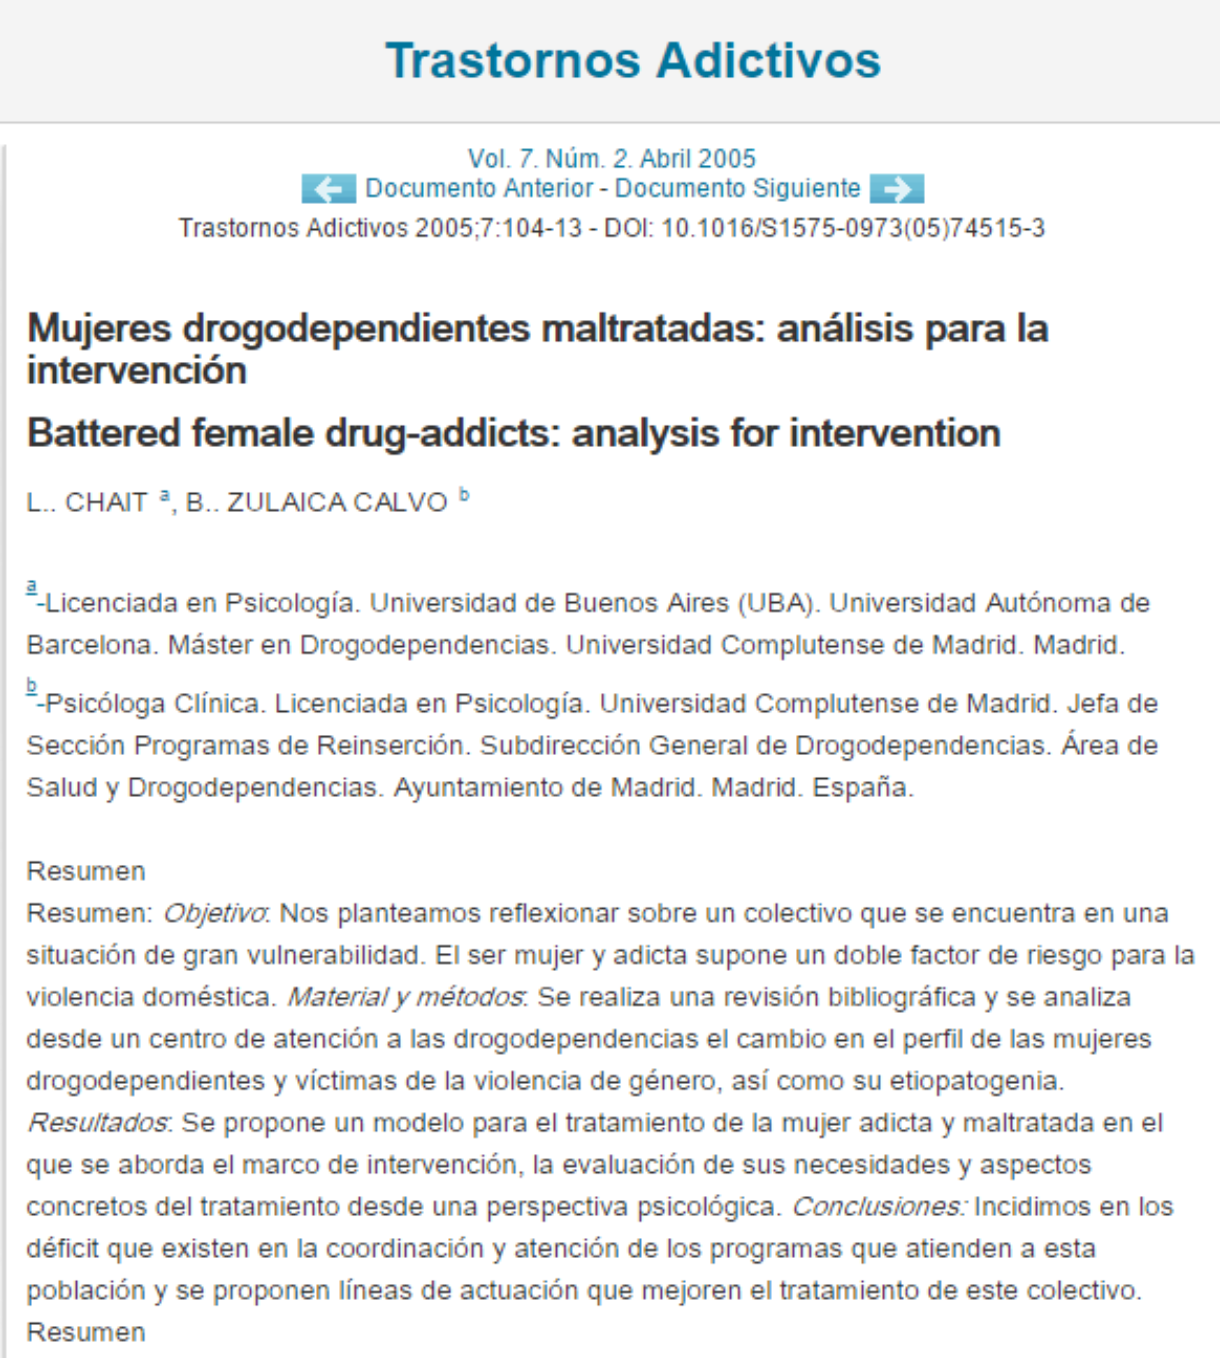 Chait, L. y Zulaica, B.: Mujeres drogodependientes maltratadas: análisis para la intervención